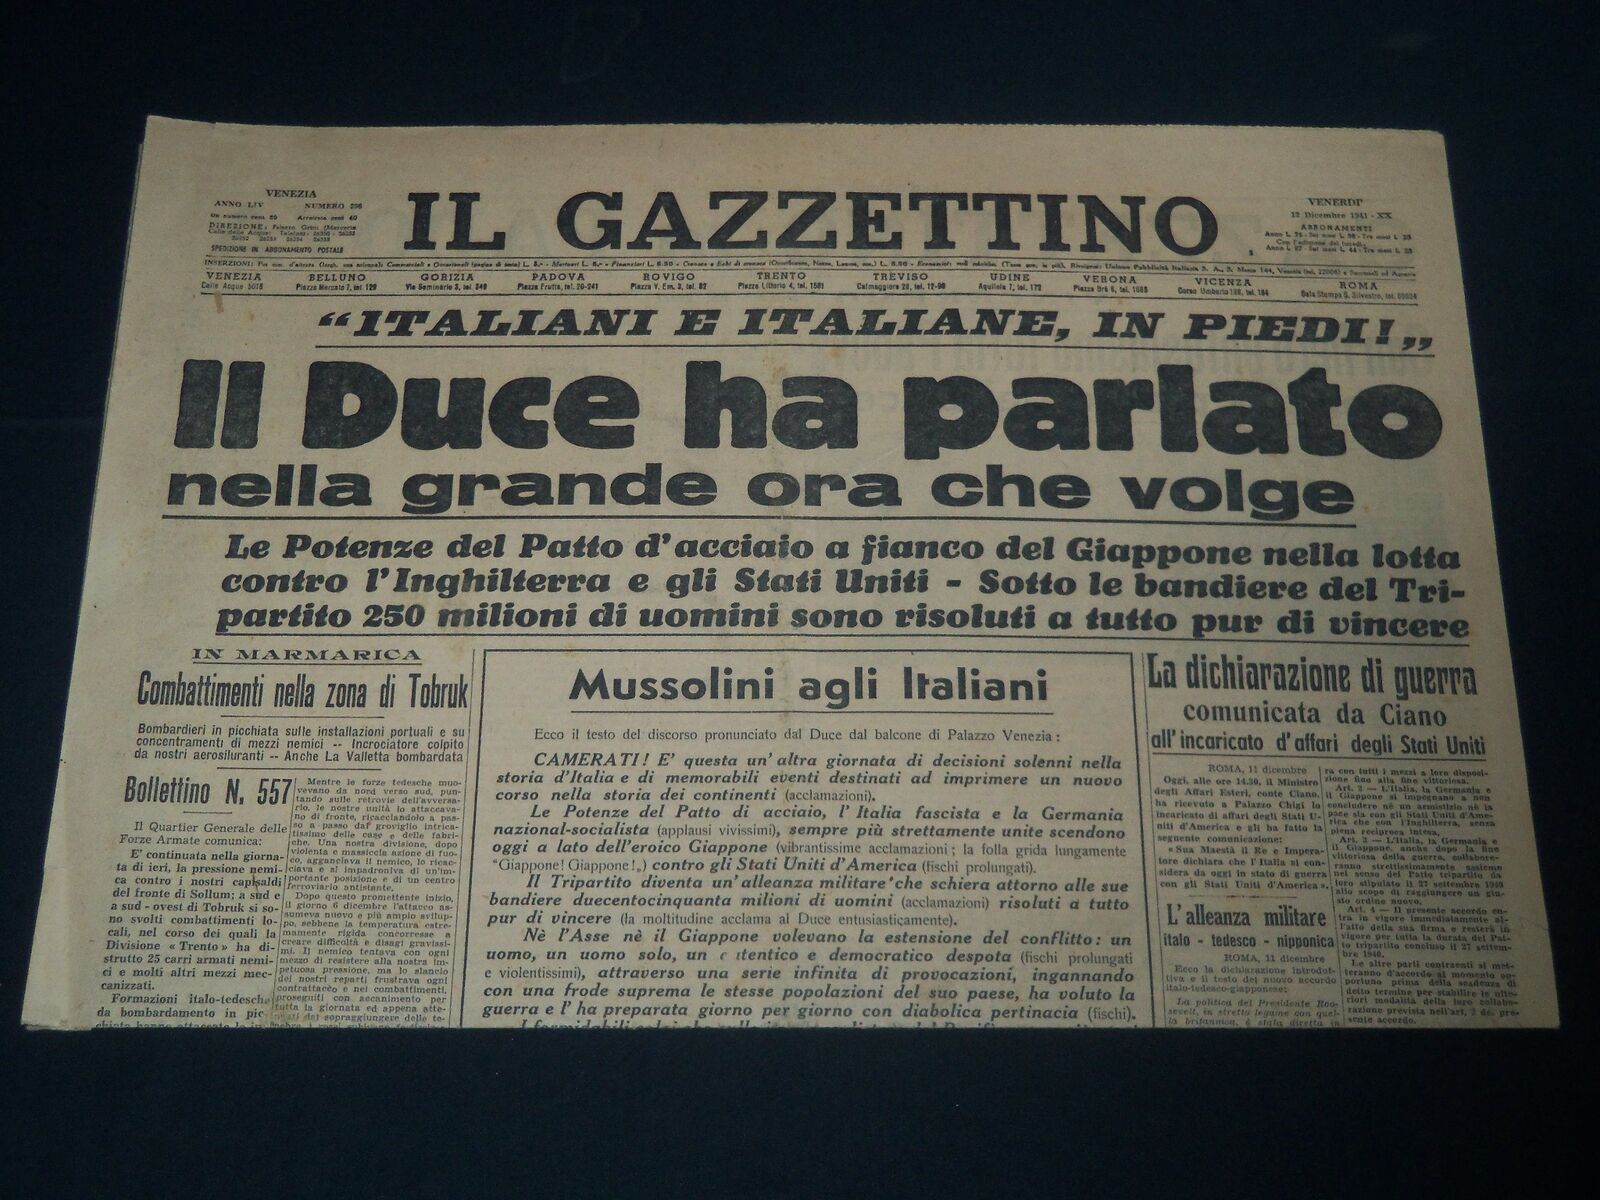 1941 DECEMBER 12 IL GAZZETTINO - IL DUCE HA PARLATO - ITALIAN - NP 3875